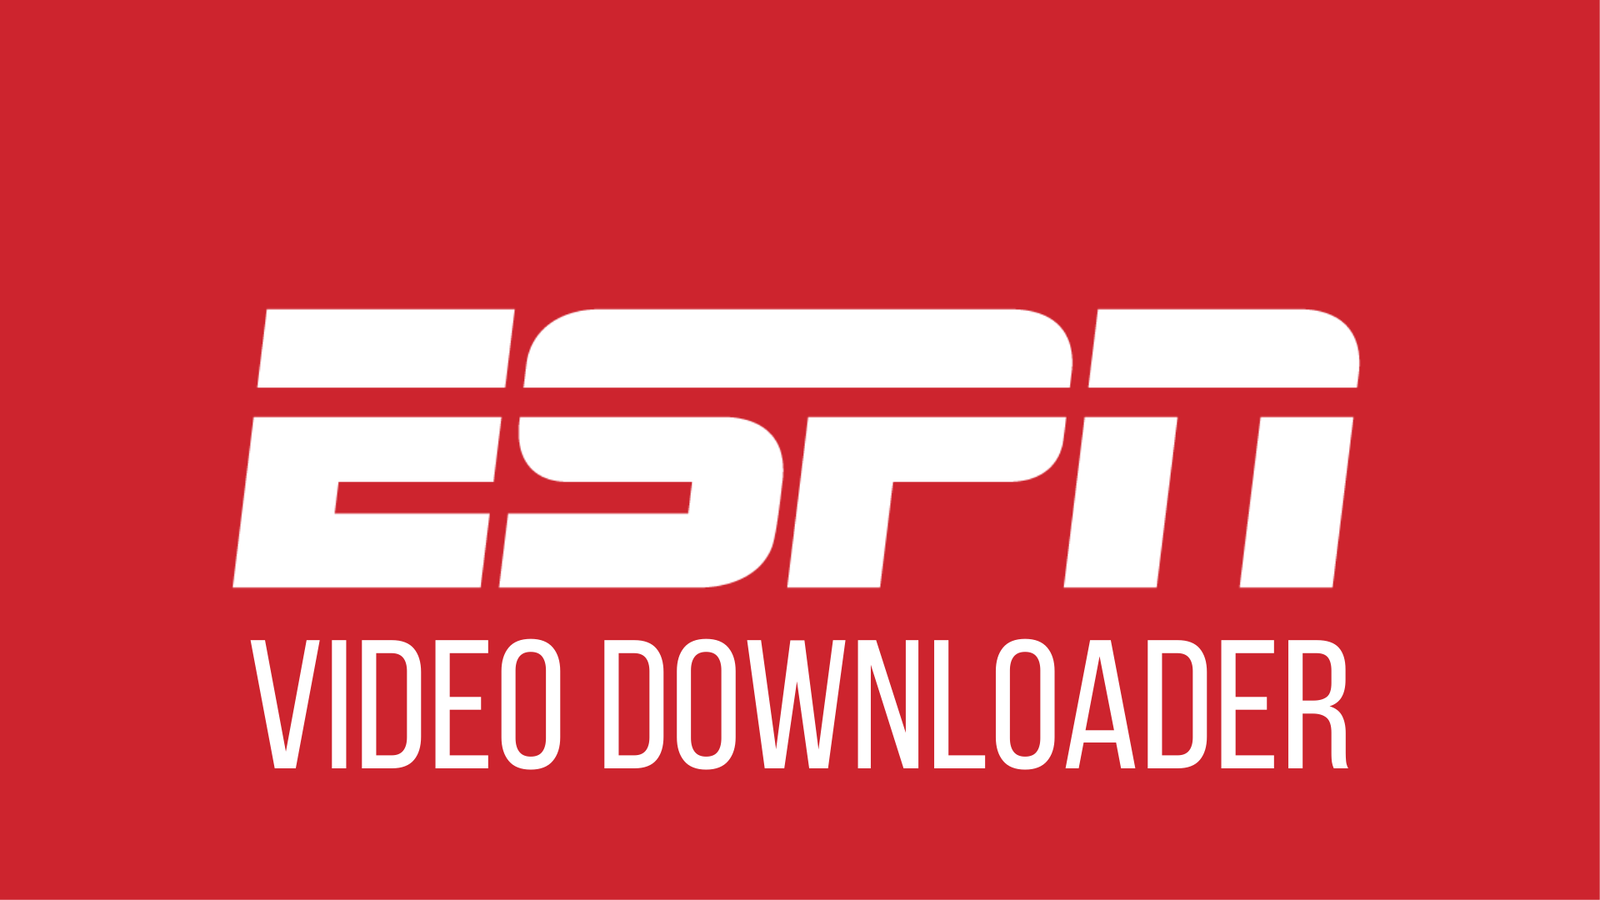 ESPN Video Downloader For Free